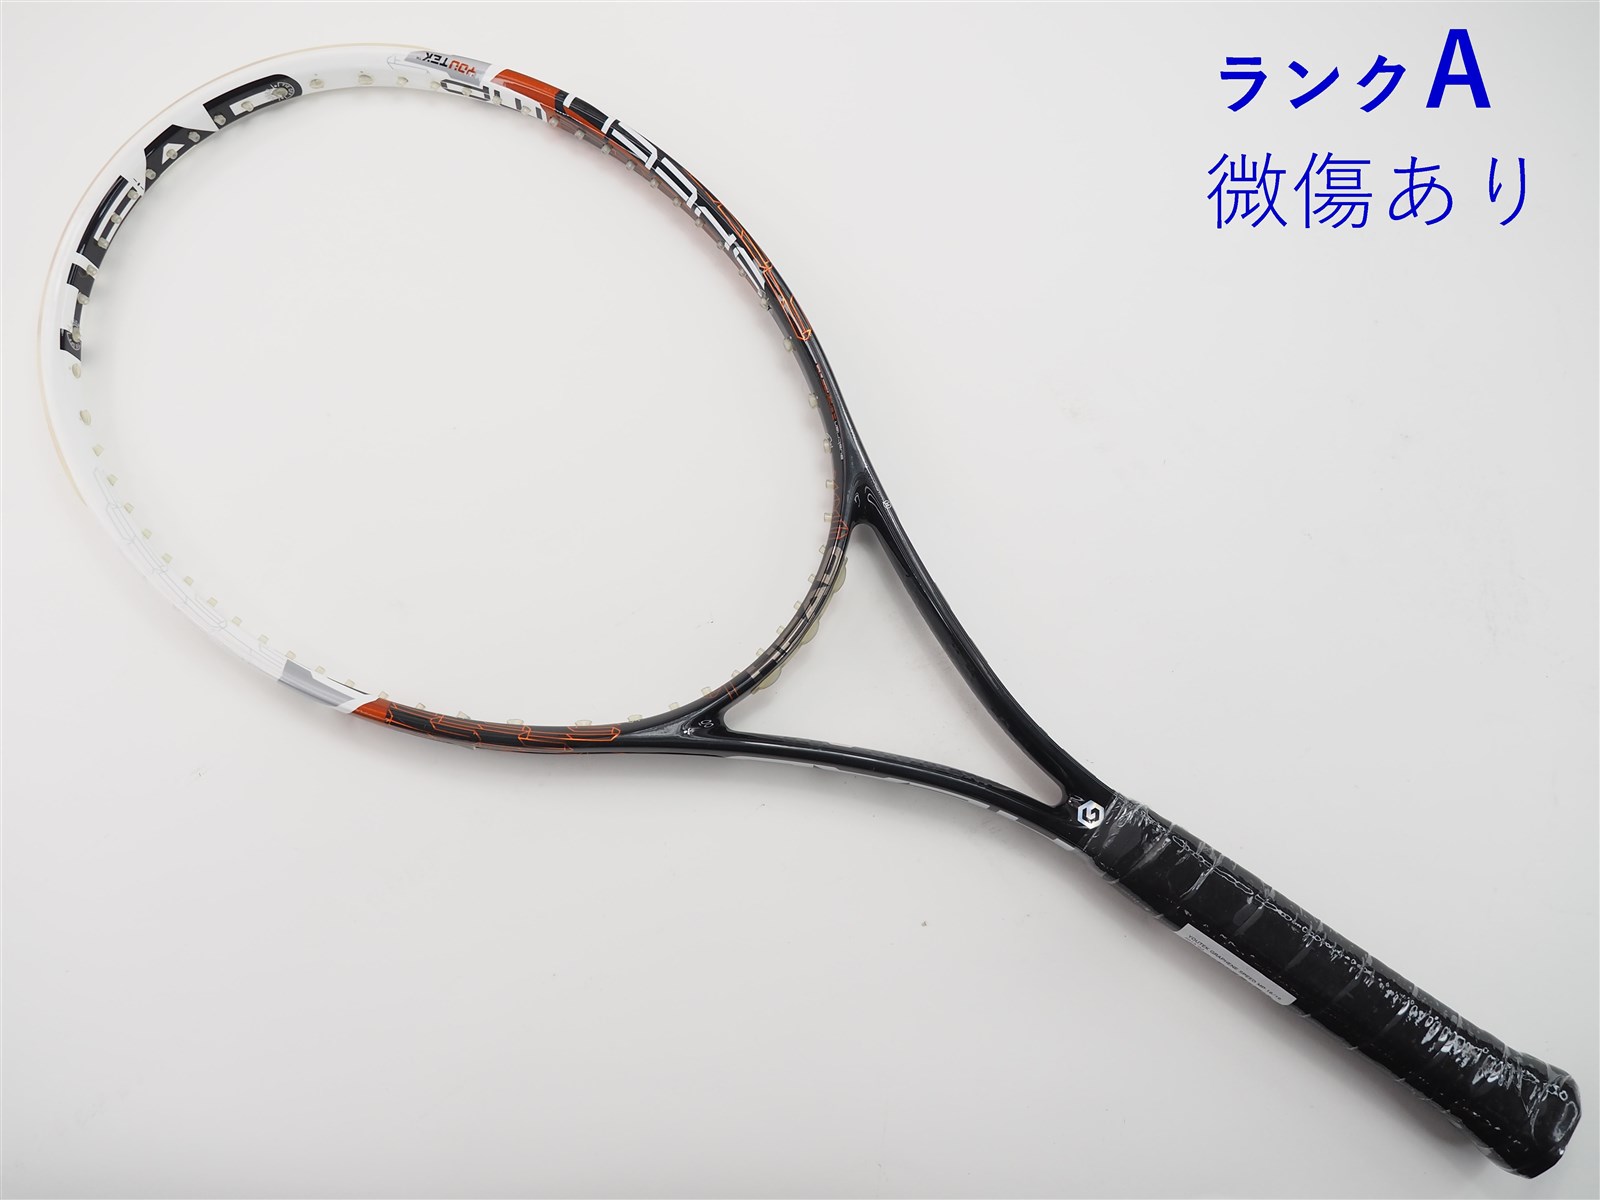 テニスラケット ヘッド ユーテック グラフィン スピード レフ 2013年モデル (G2)HEAD YOUTEK GRAPHENE SPEED REV 2013